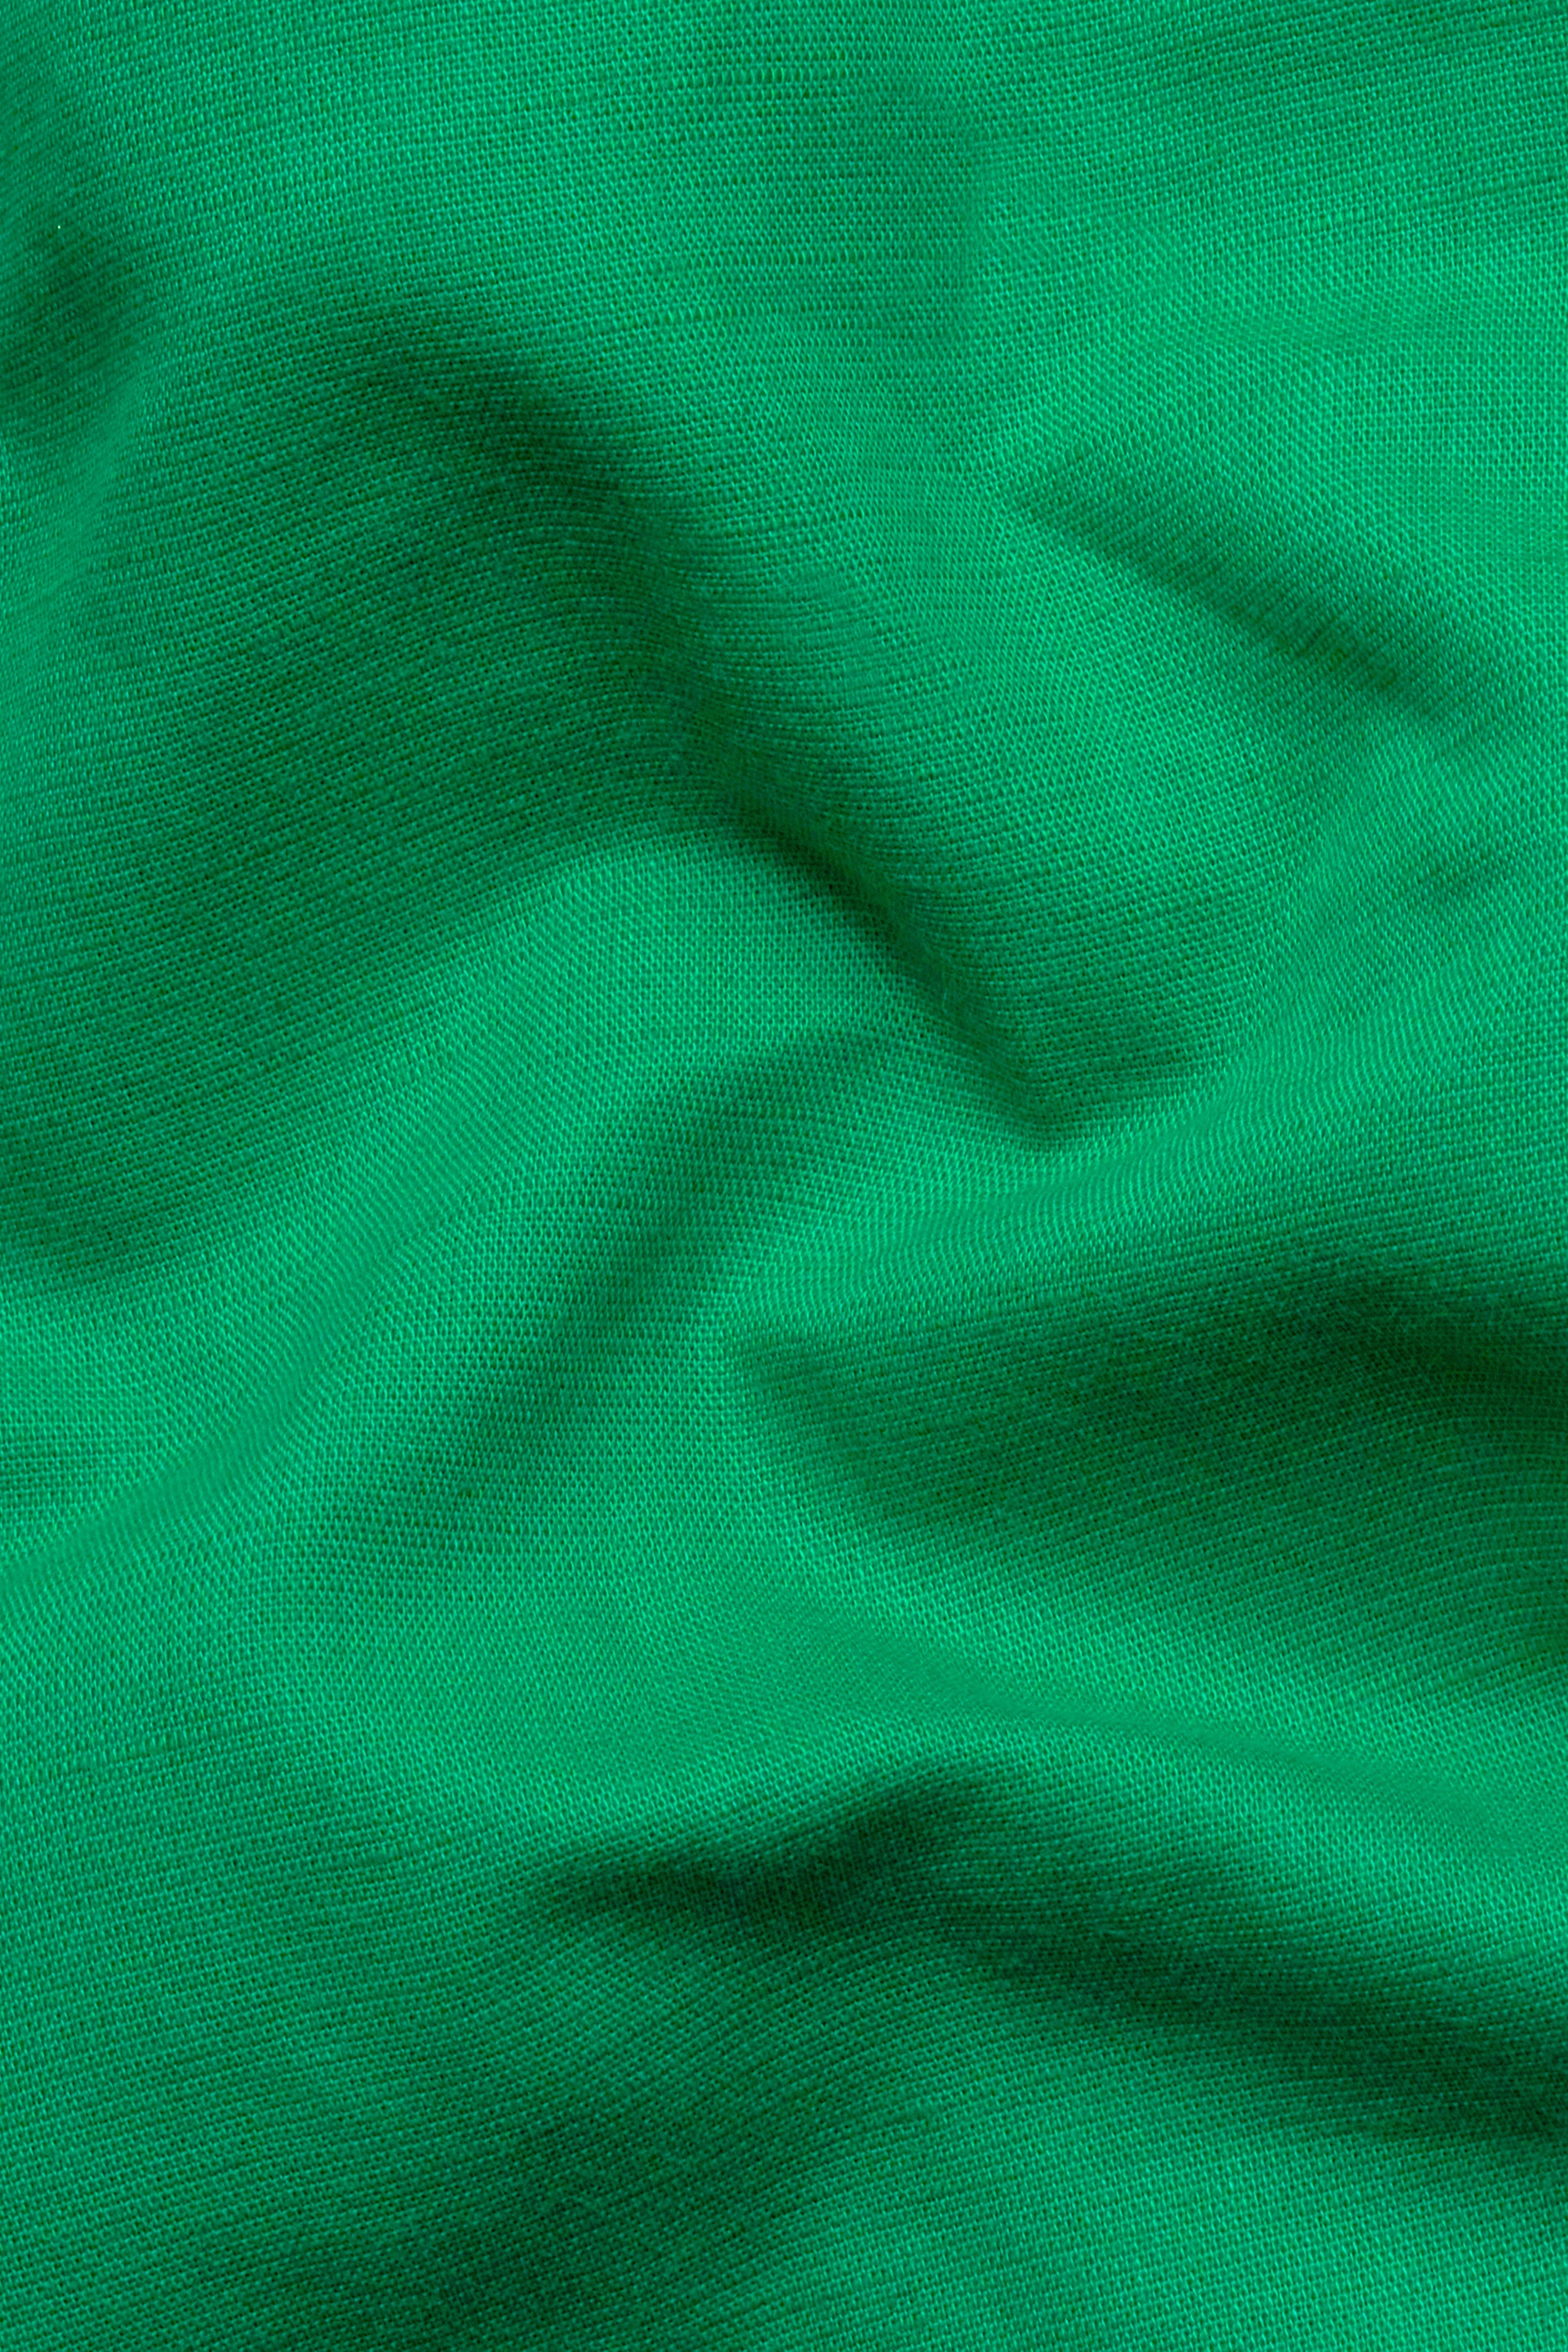 Shamrock Green Hand Painted Luxurious Linen Designer Shirt 6160-BD-BLK-ART-38, 6160-BD-BLK-ART-H-38, 6160-BD-BLK-ART-39, 6160-BD-BLK-ART-H-39, 6160-BD-BLK-ART-40, 6160-BD-BLK-ART-H-40, 6160-BD-BLK-ART-42, 6160-BD-BLK-ART-H-42, 6160-BD-BLK-ART-44, 6160-BD-BLK-ART-H-44, 6160-BD-BLK-ART-46, 6160-BD-BLK-ART-H-46, 6160-BD-BLK-ART-48, 6160-BD-BLK-ART-H-48, 6160-BD-BLK-ART-50, 6160-BD-BLK-ART-H-50, 6160-BD-BLK-ART-52, 6160-BD-BLK-ART-H-52